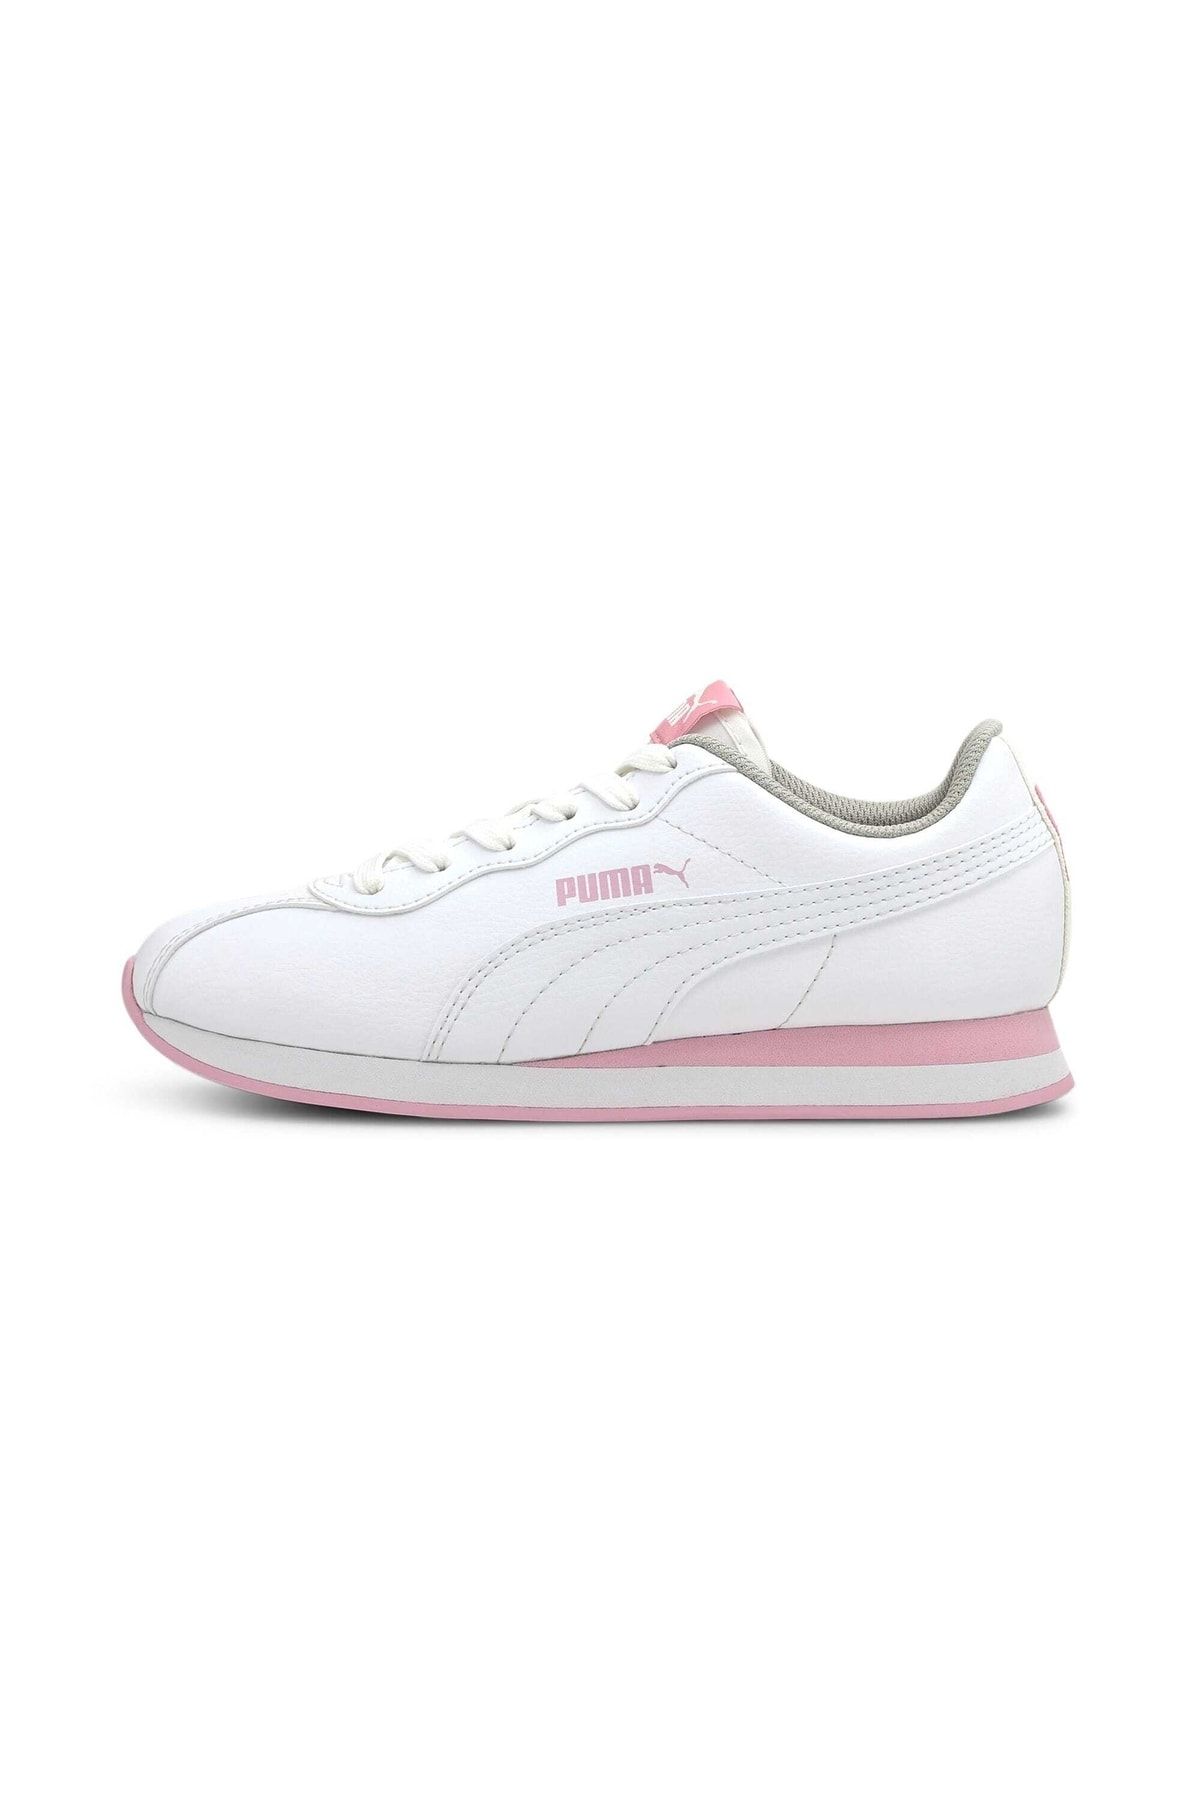 Puma Turin Iı Kadın Beyaz Spor Ayakkabı (366773-21)